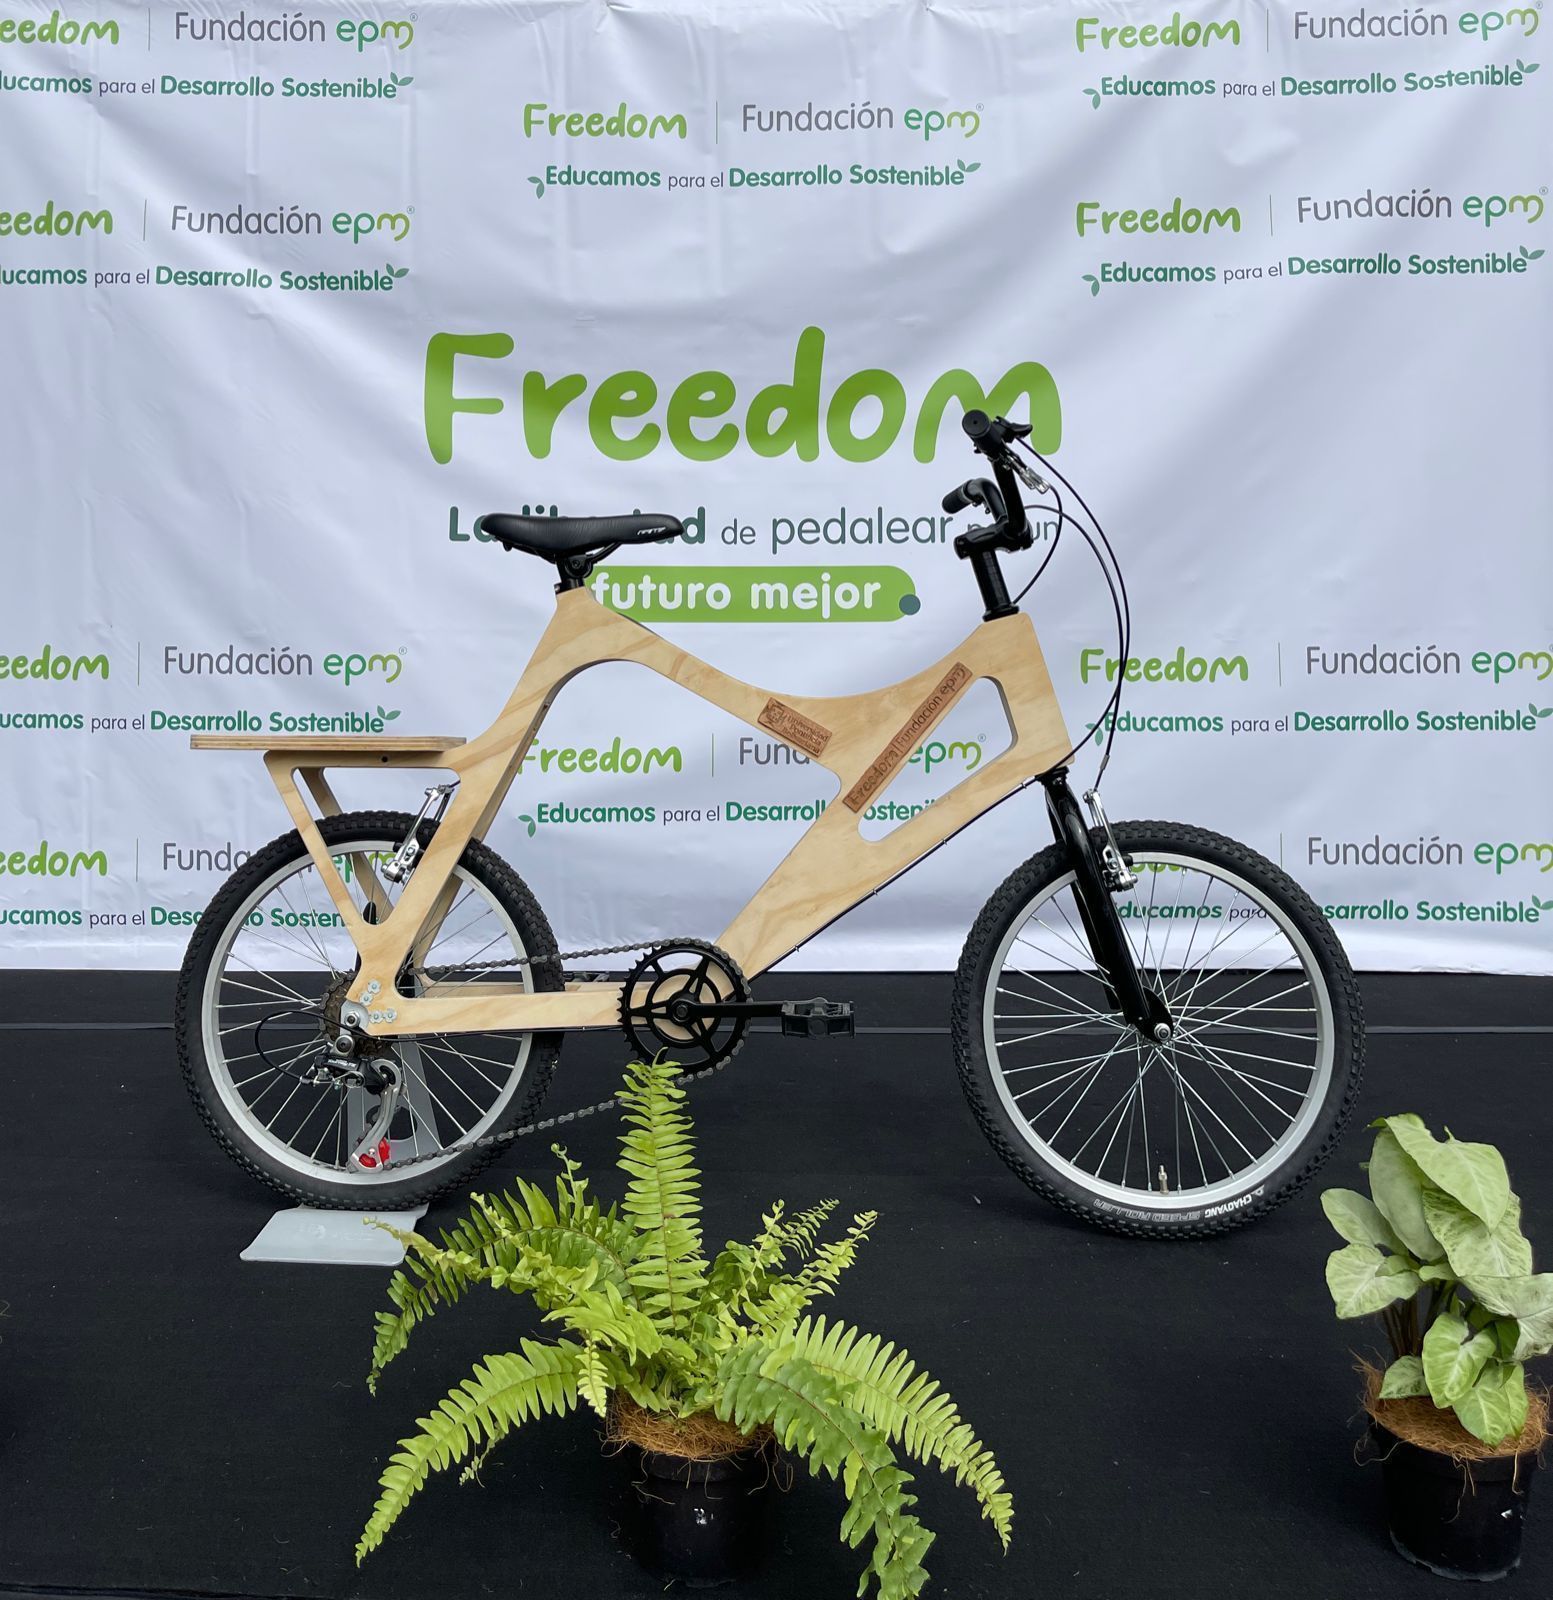 La madera es el nuevo material con el que se desarrollarán las bicicletas 